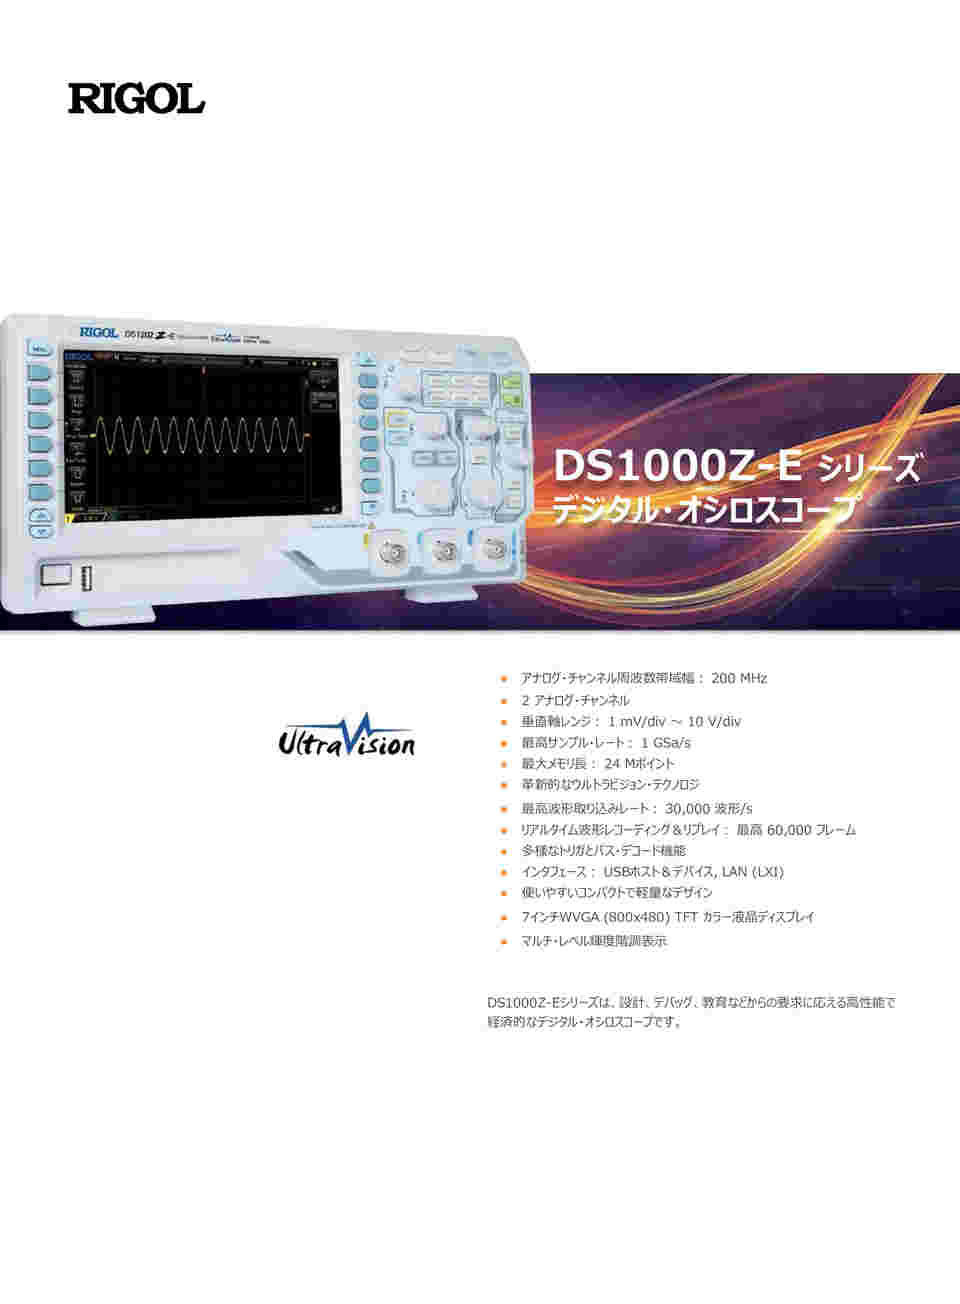 67-4507-13 デジタル・オシロスコープ 2CH 200MHz DS1202Z-E 【AXEL